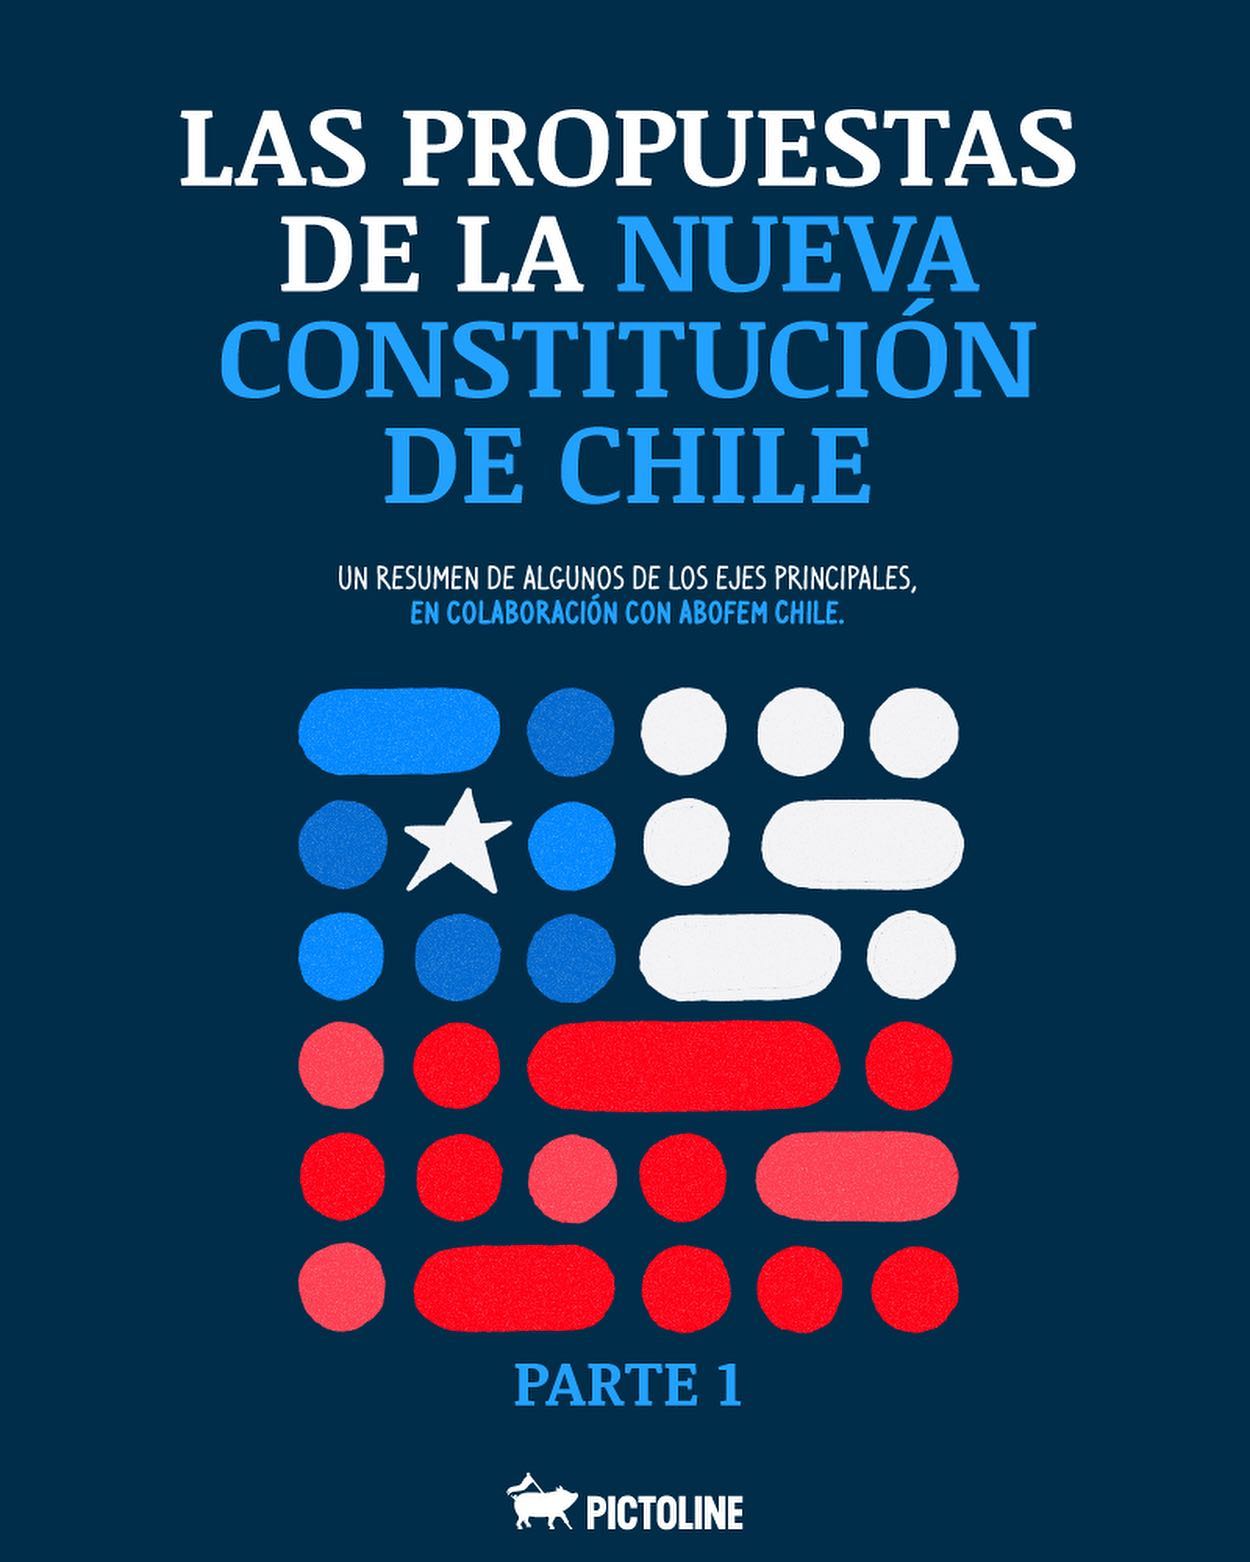 El resumen de algunas de las principales propuestas de la nueva constitución chilena 🇨🇱👆 Una colaboración entre Pictoline y Abofem Chile. Parte 1 / 2 📘 #chile #constitucion #propuestas #resumen #plebiscito #nuevaconstitucion